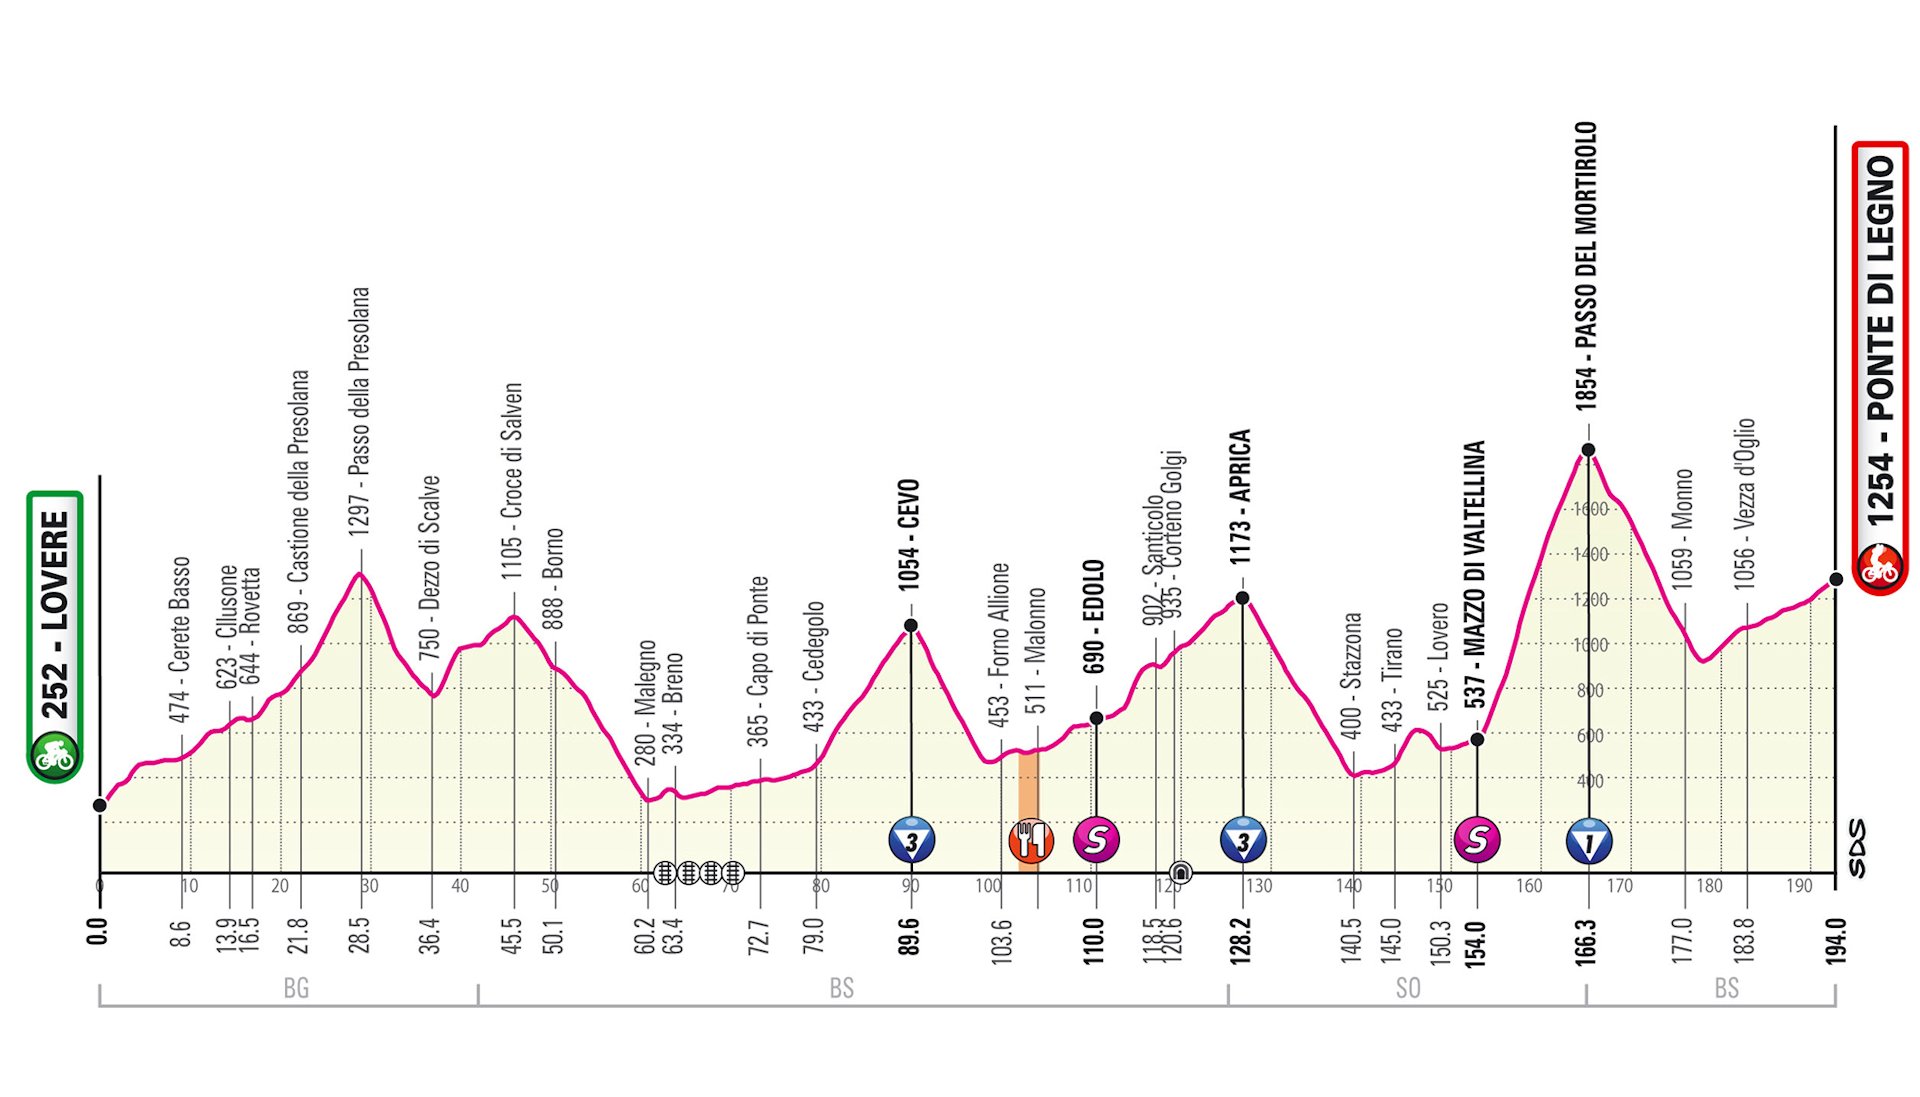 Giro d’Italia 2019. Etap 16 bez Passo Gavia